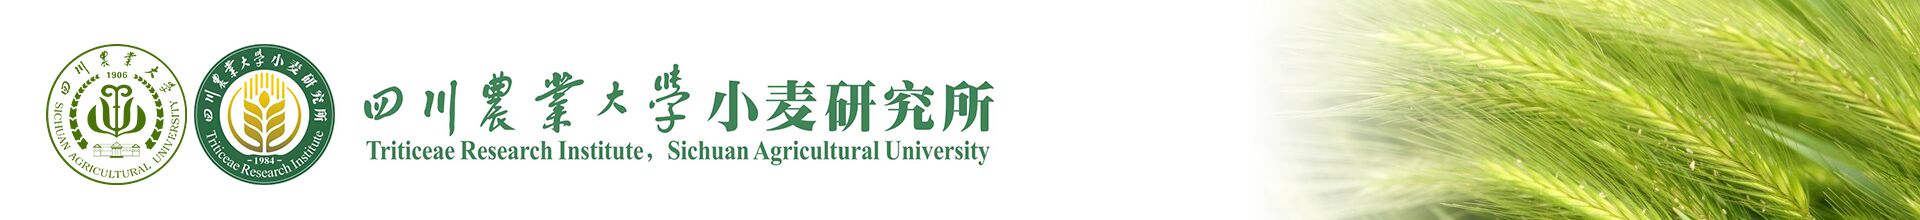 四川农业大学小麦研究所